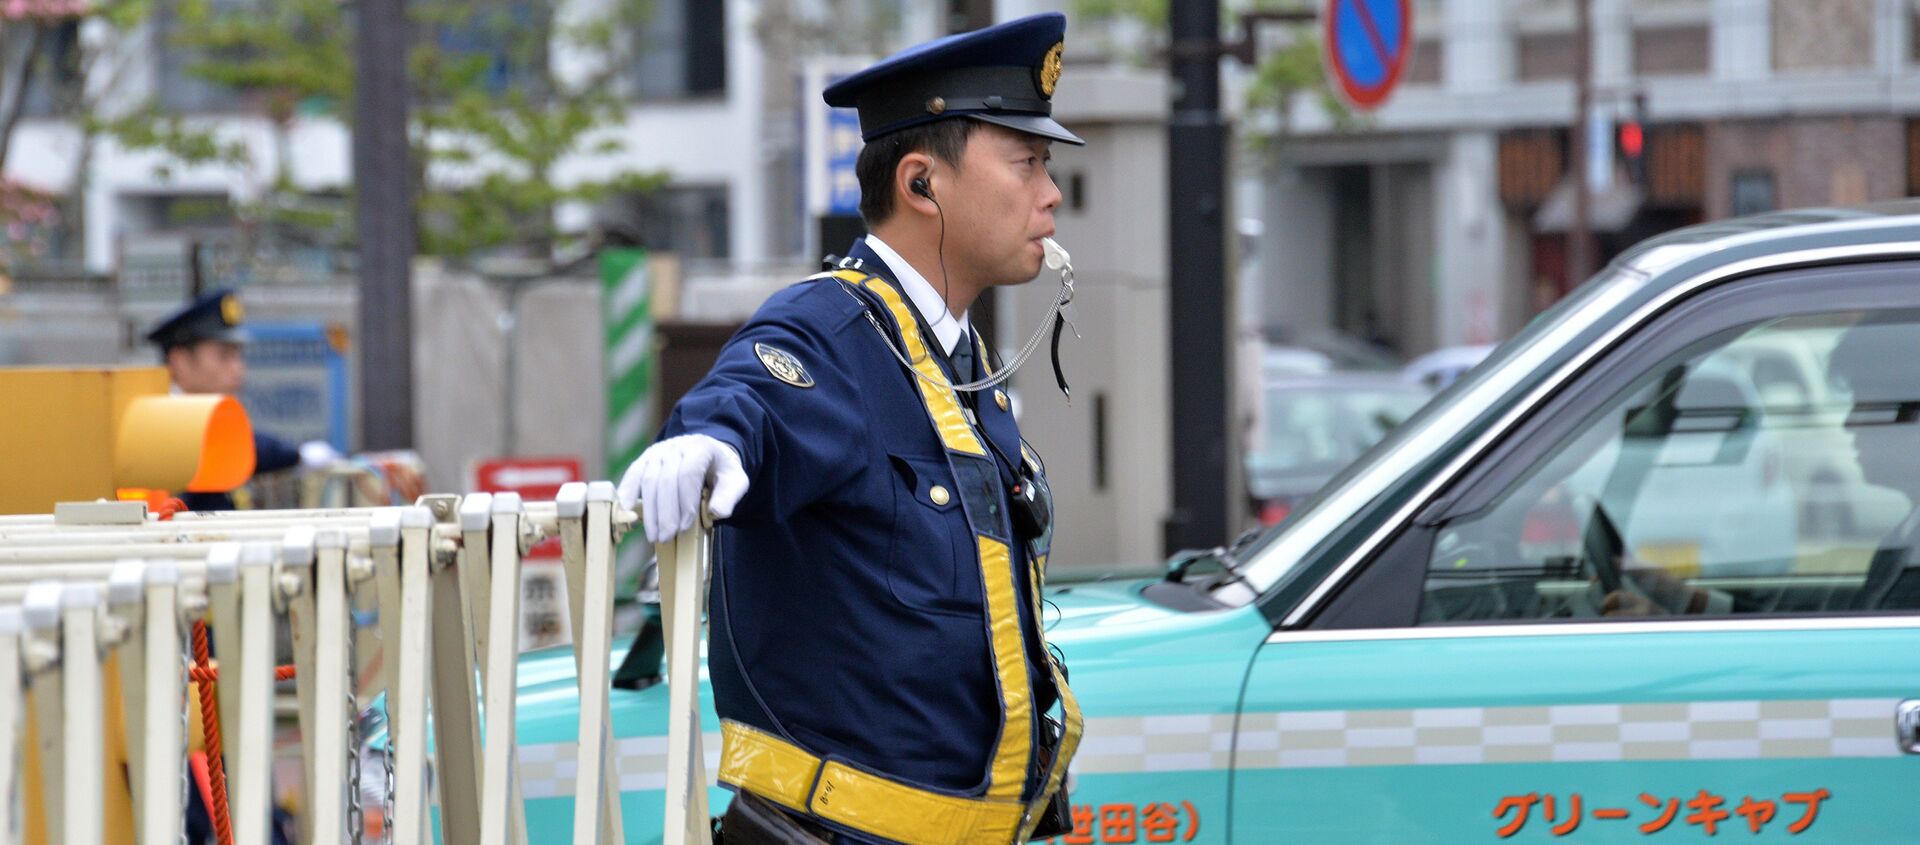 Police officer  in Tokyo - Sputnik International, 1920, 06.08.2021